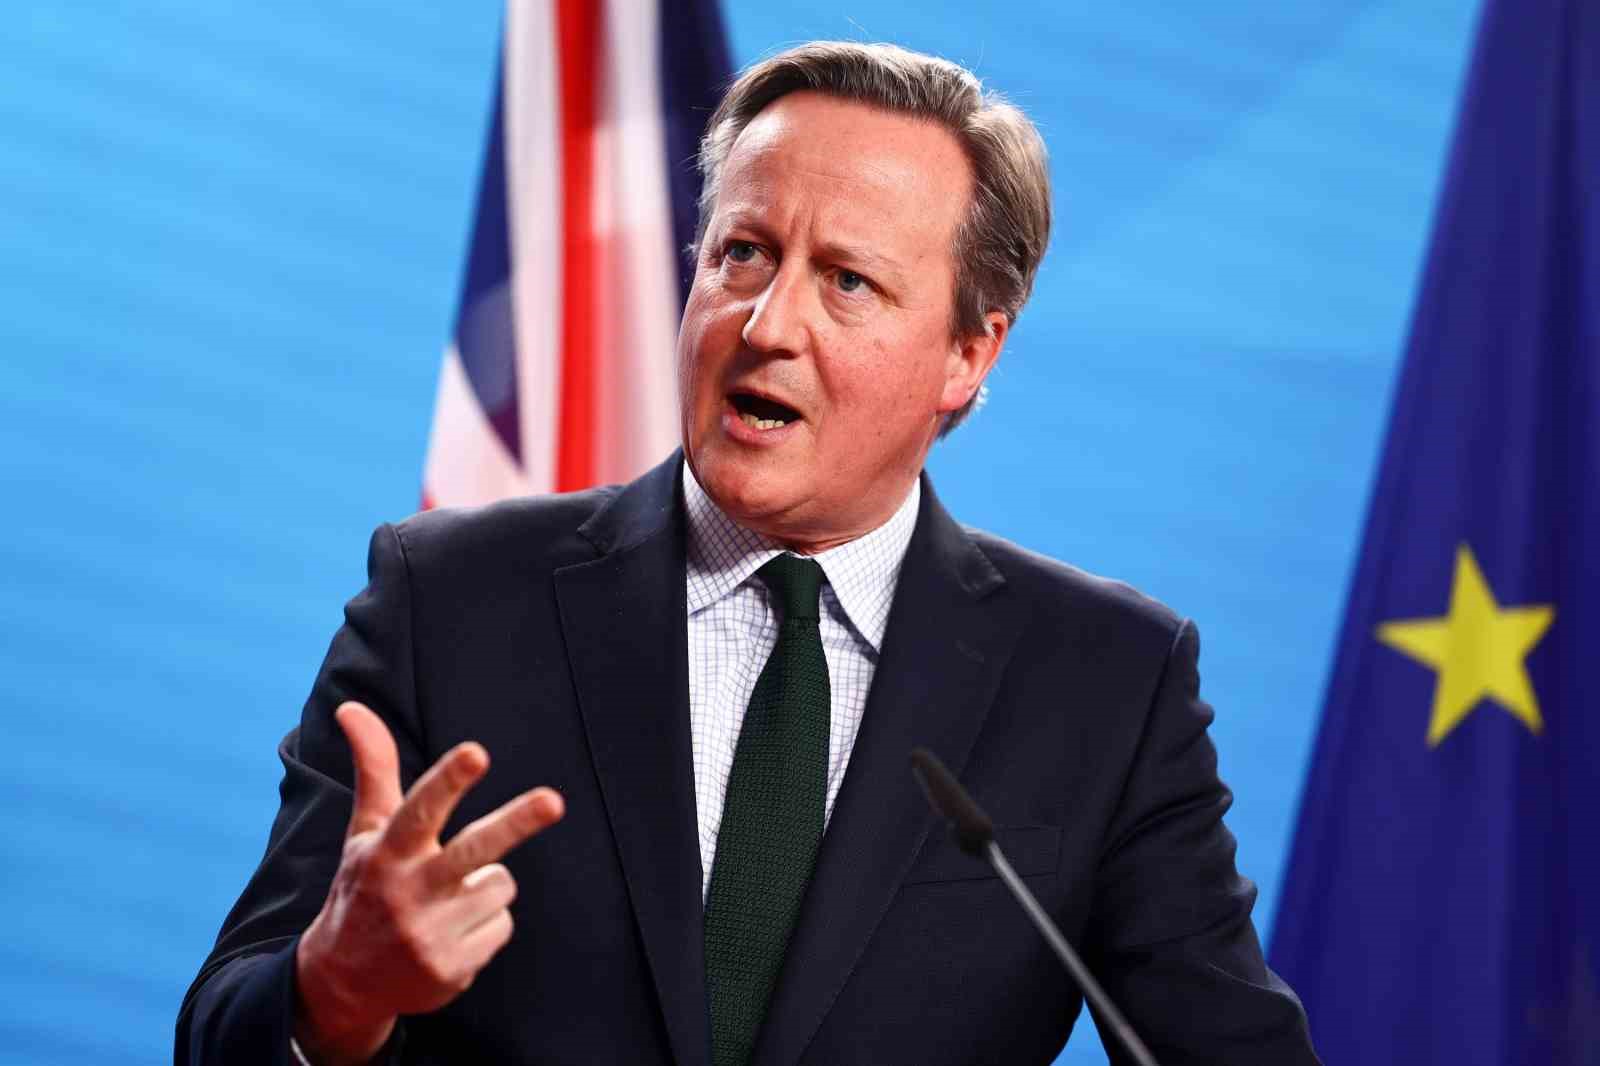 İngiliz Bakan Cameron: “Gazze’ye deniz koridorunun başlaması aylar sürer”